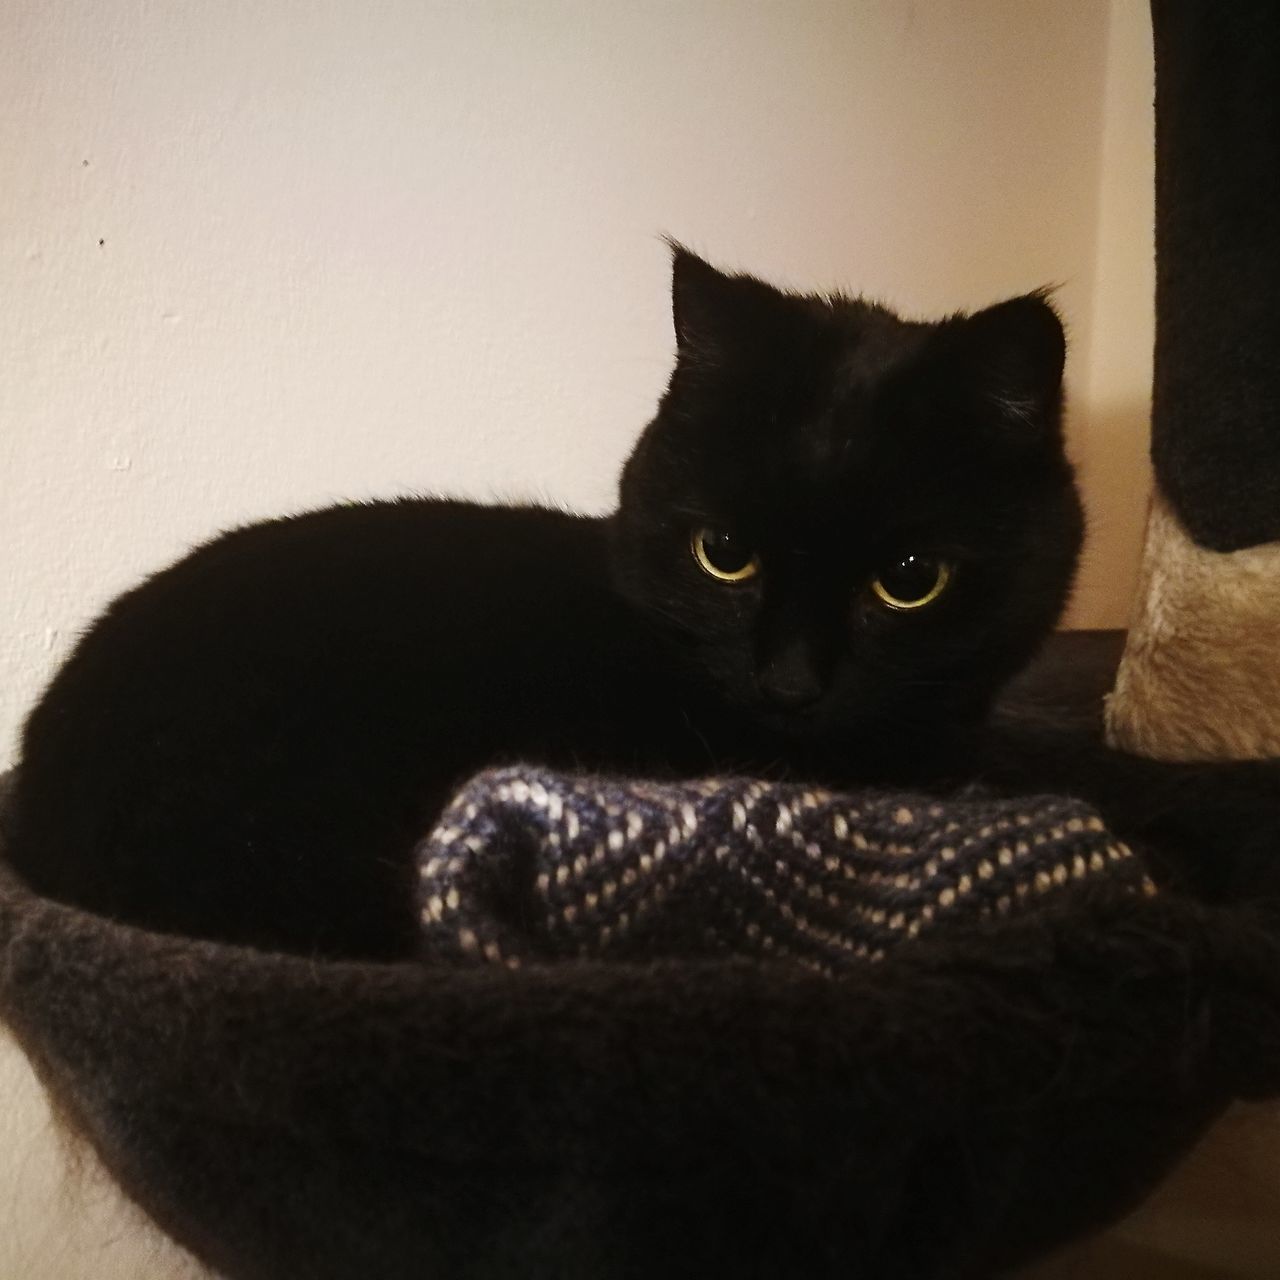 CLOSE-UP PORTRAIT OF BLACK CAT